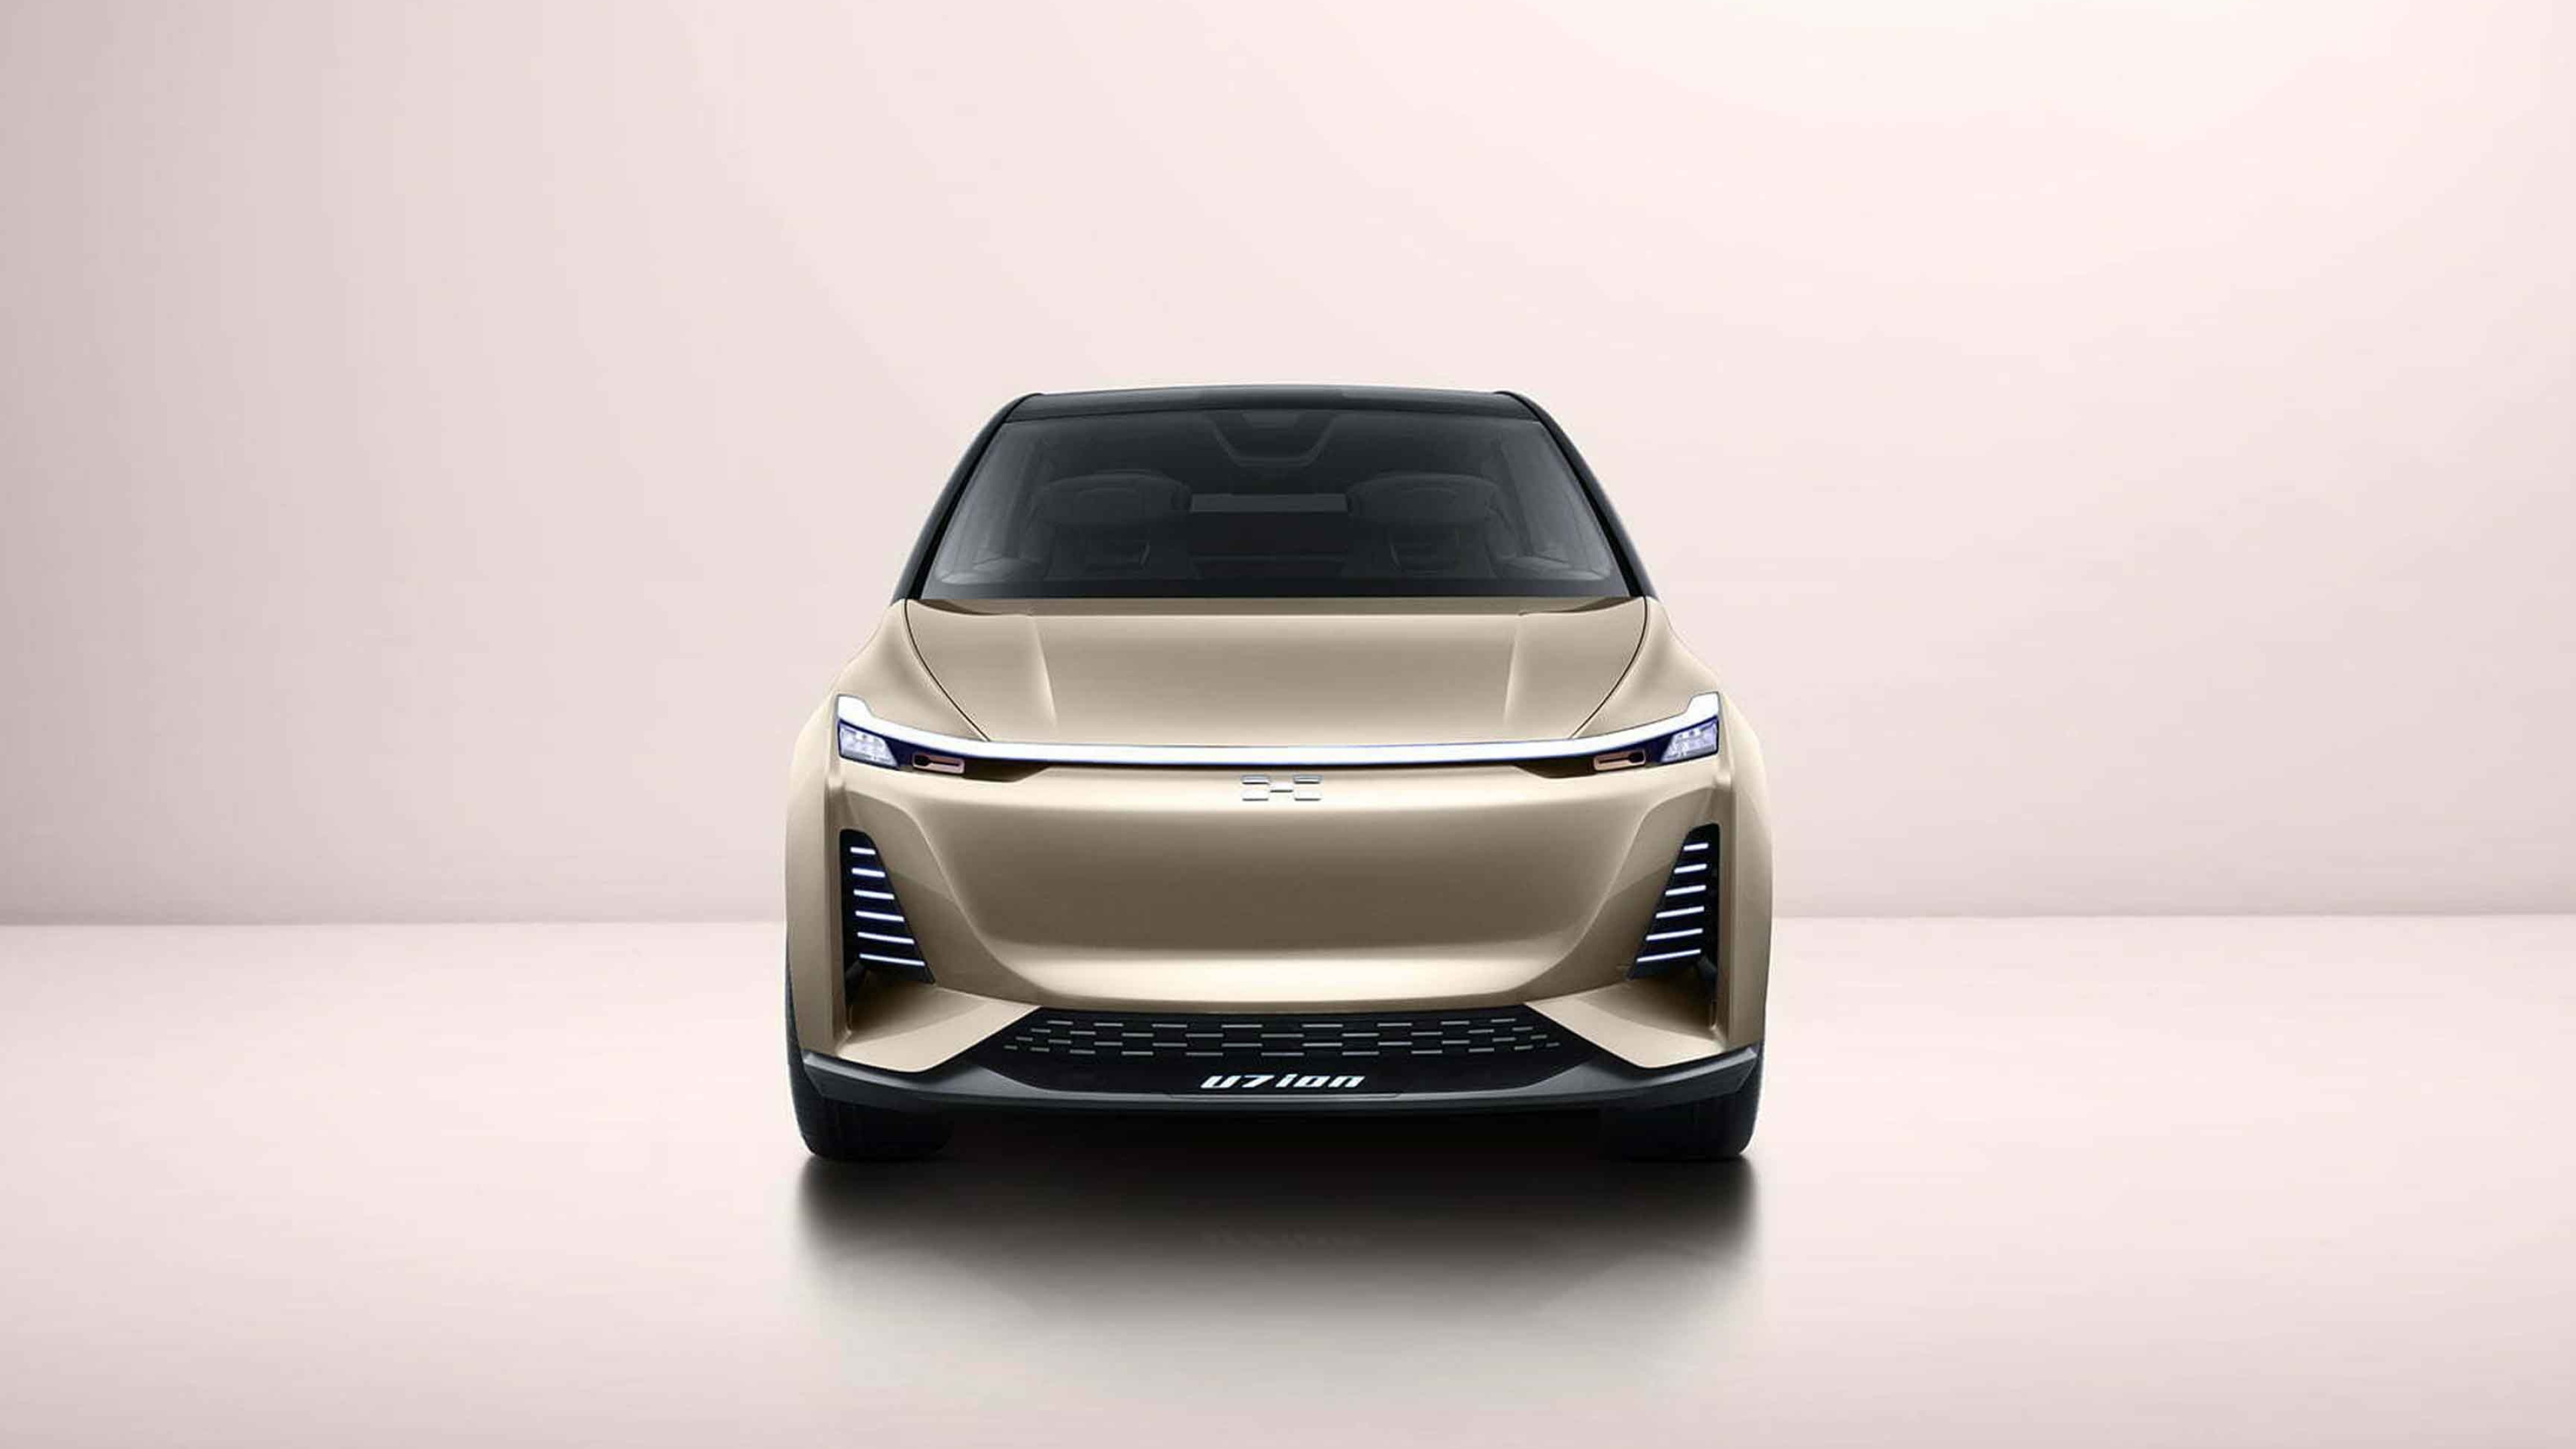 Aiways U7 Ion concept, Dailyrevs, Electric car, Futuristic design, 3840x2160 4K Desktop